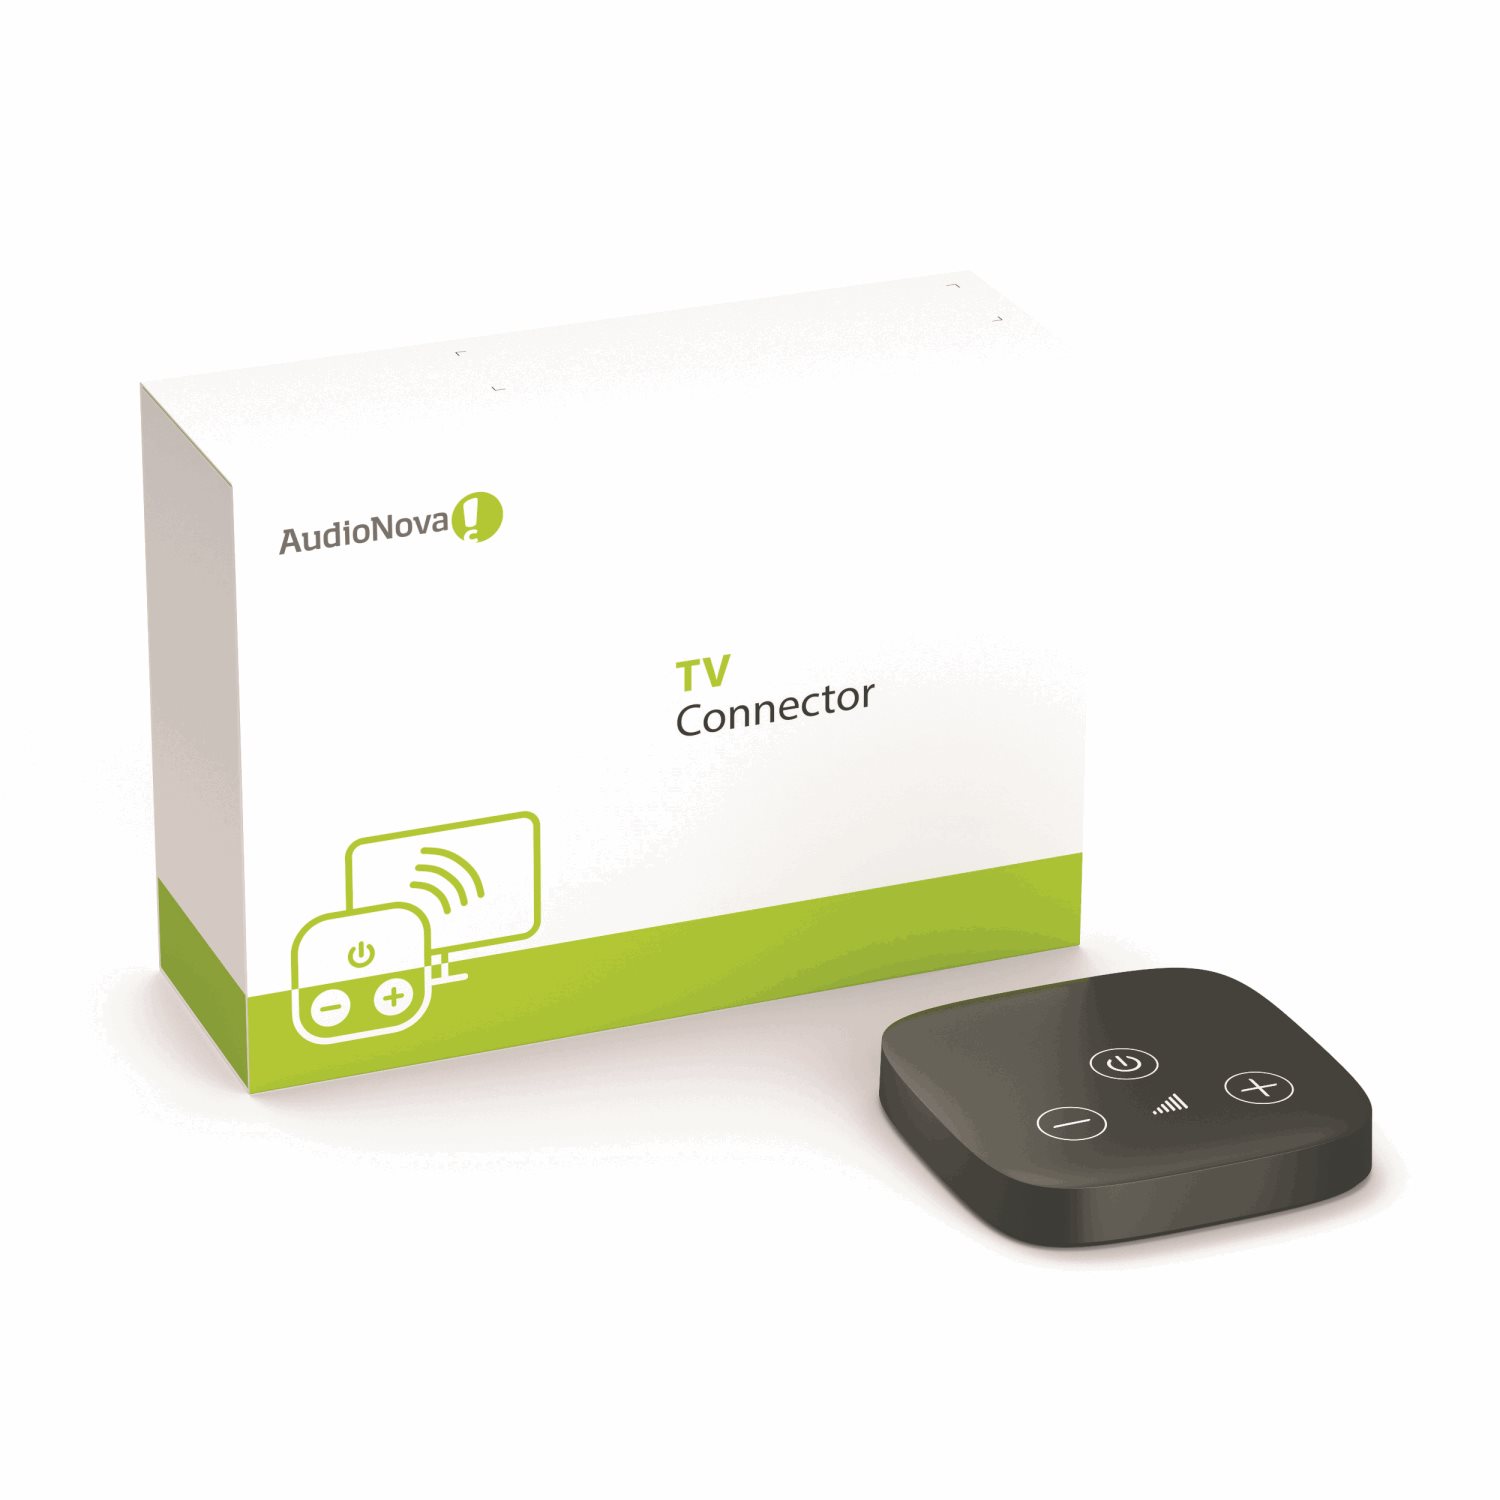 AudioNova - TV-connector